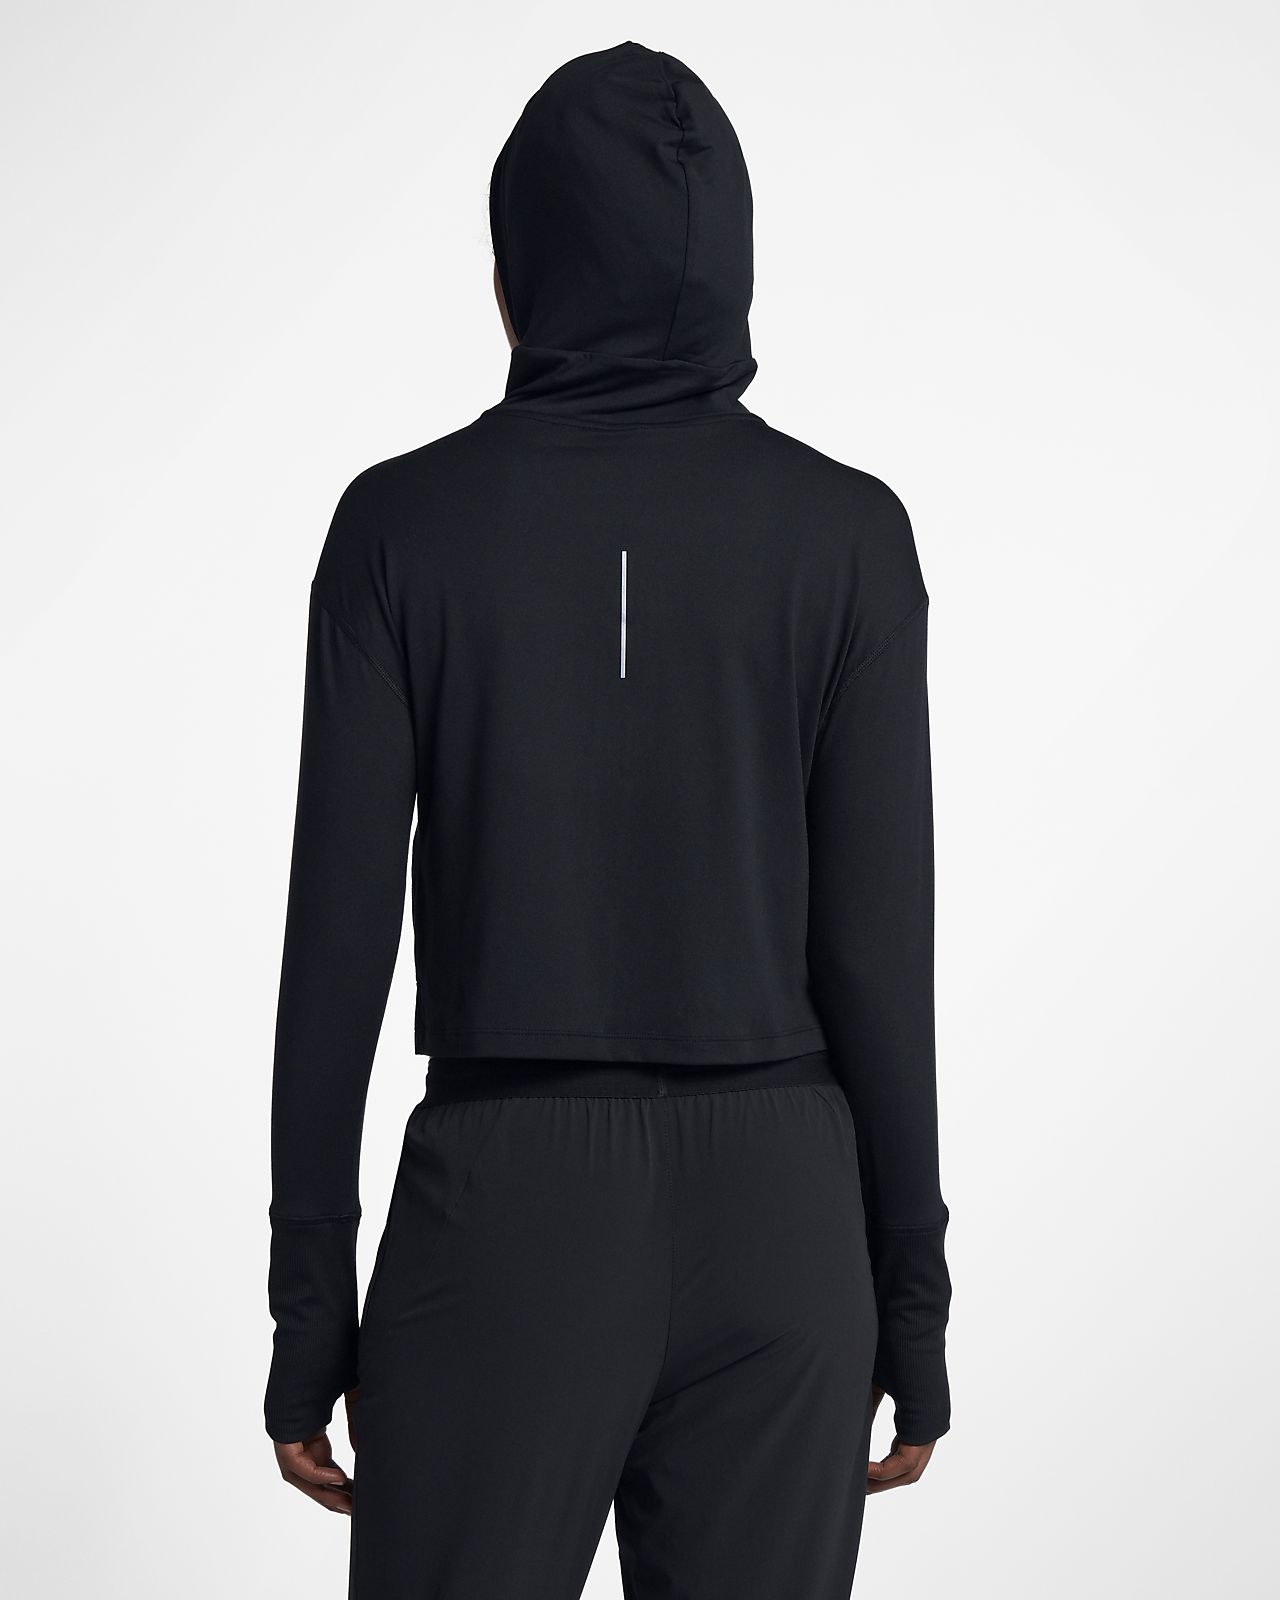 black running hoodie